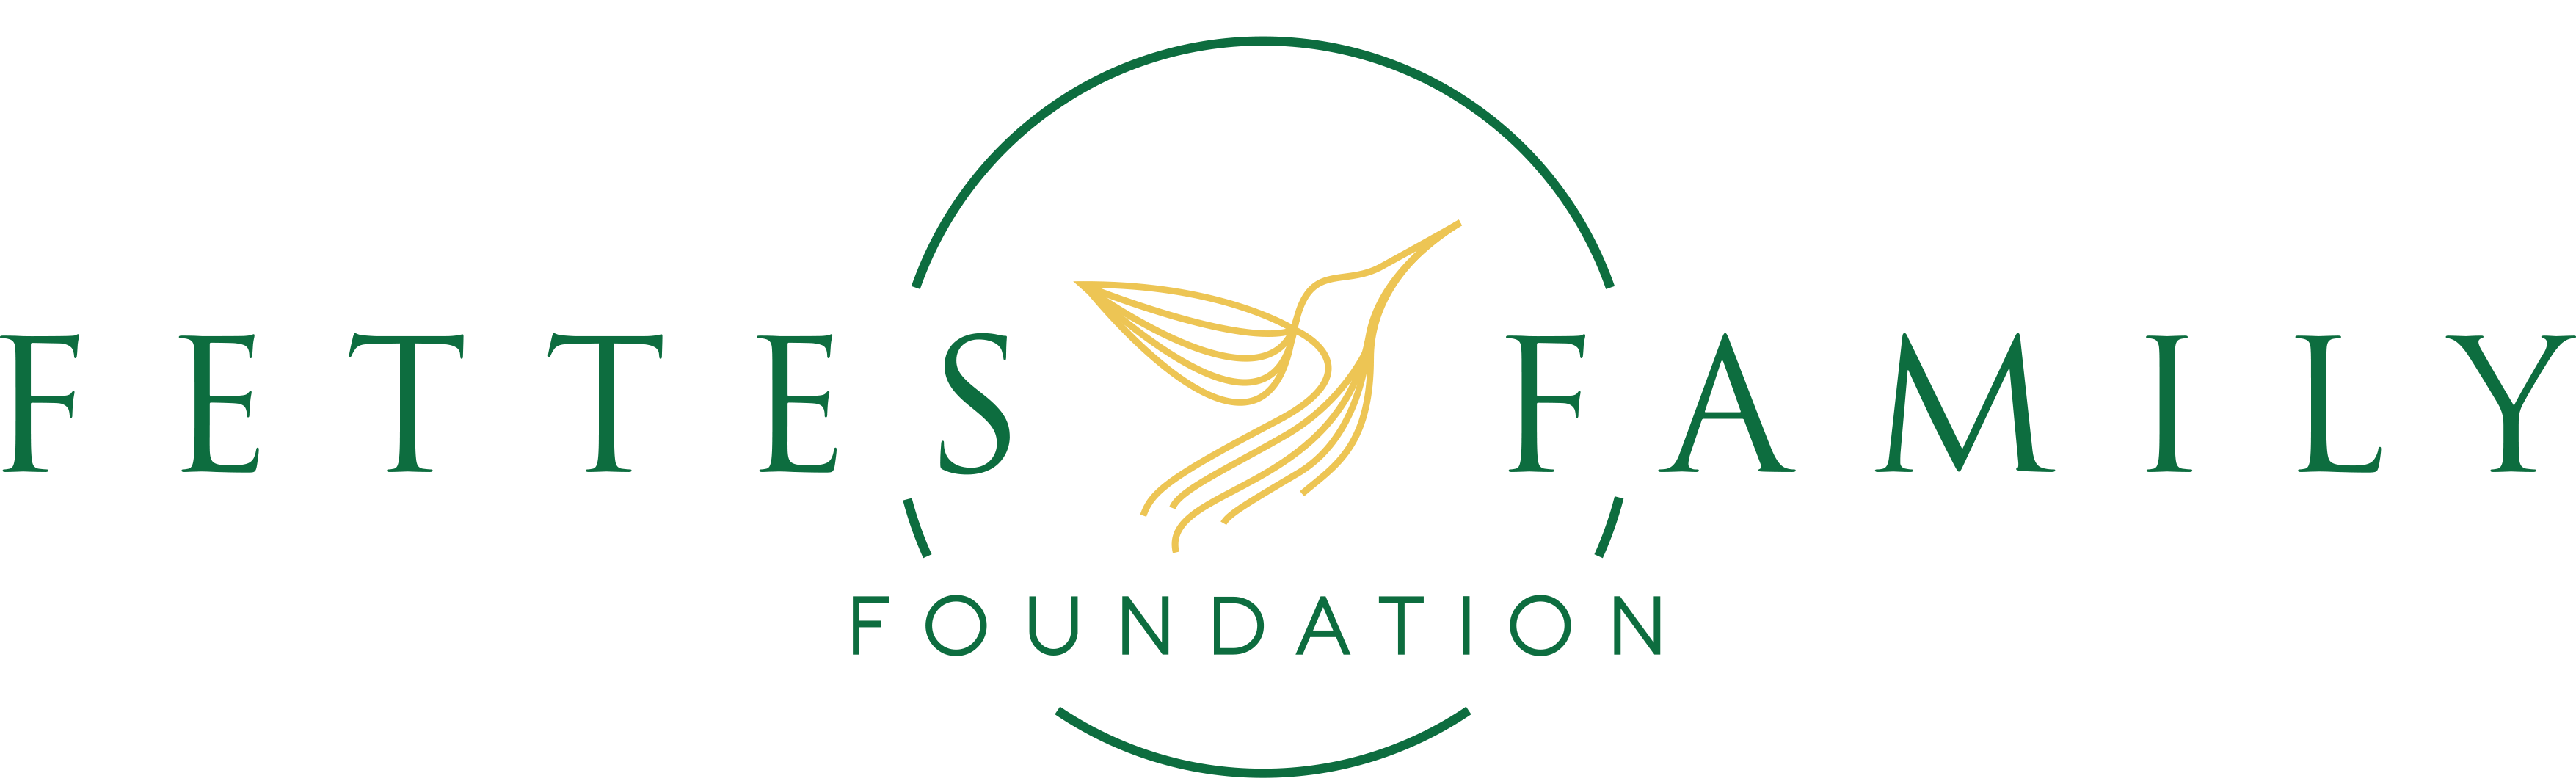 Fettes Foundation